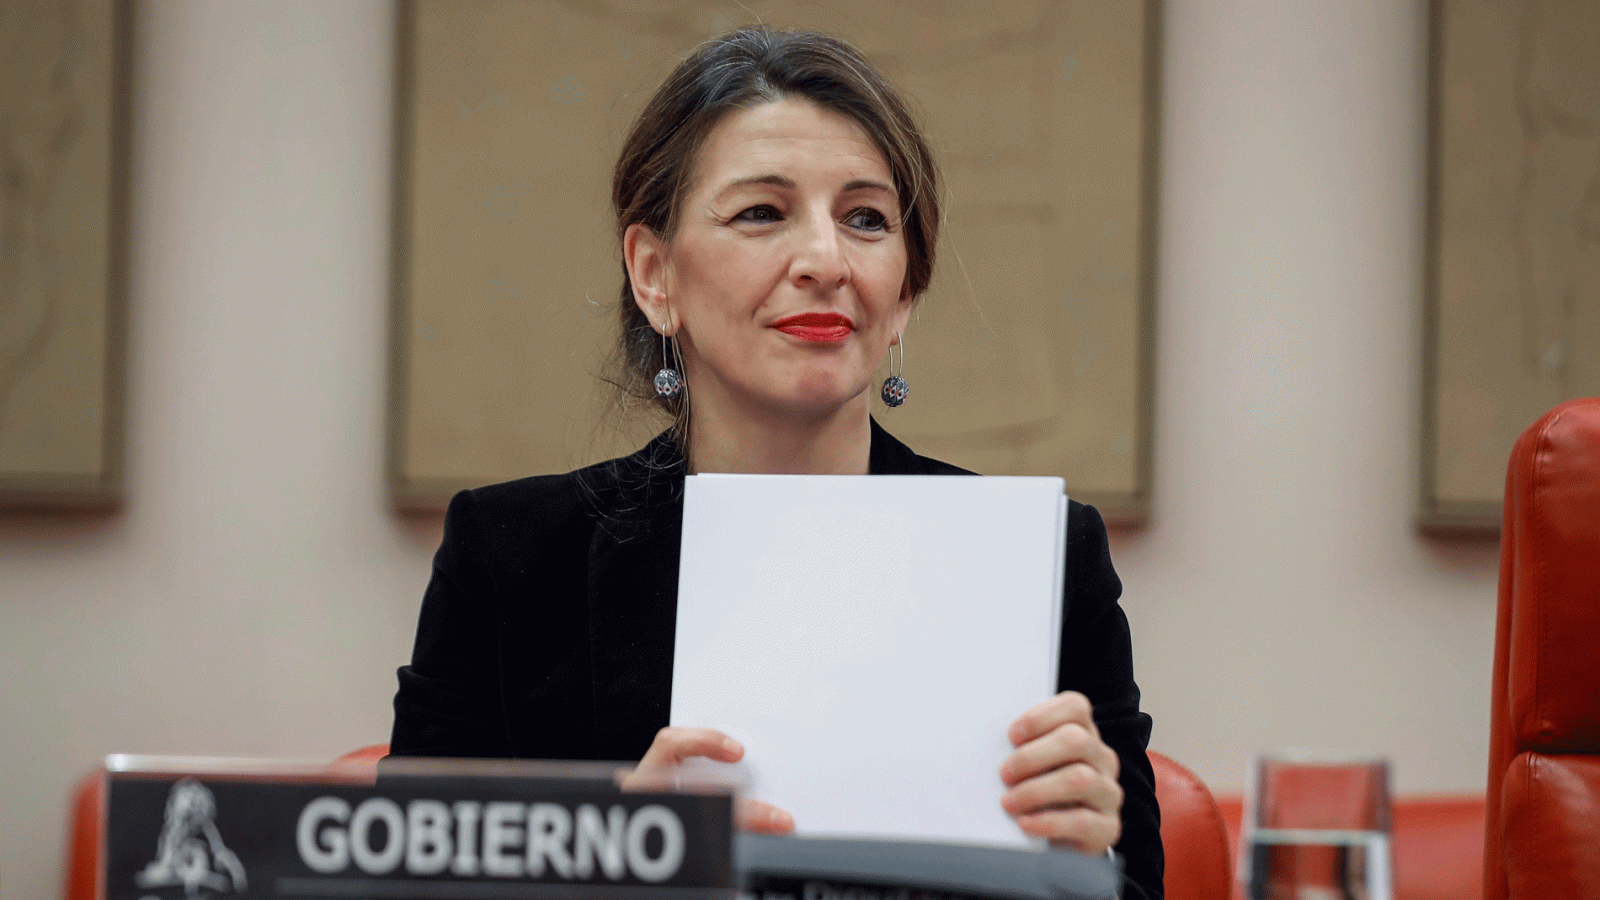 La ministra de Trabajo y Economía Social, Yolanda Díaz, durante su comparecencia en el Congreso de los Diputados